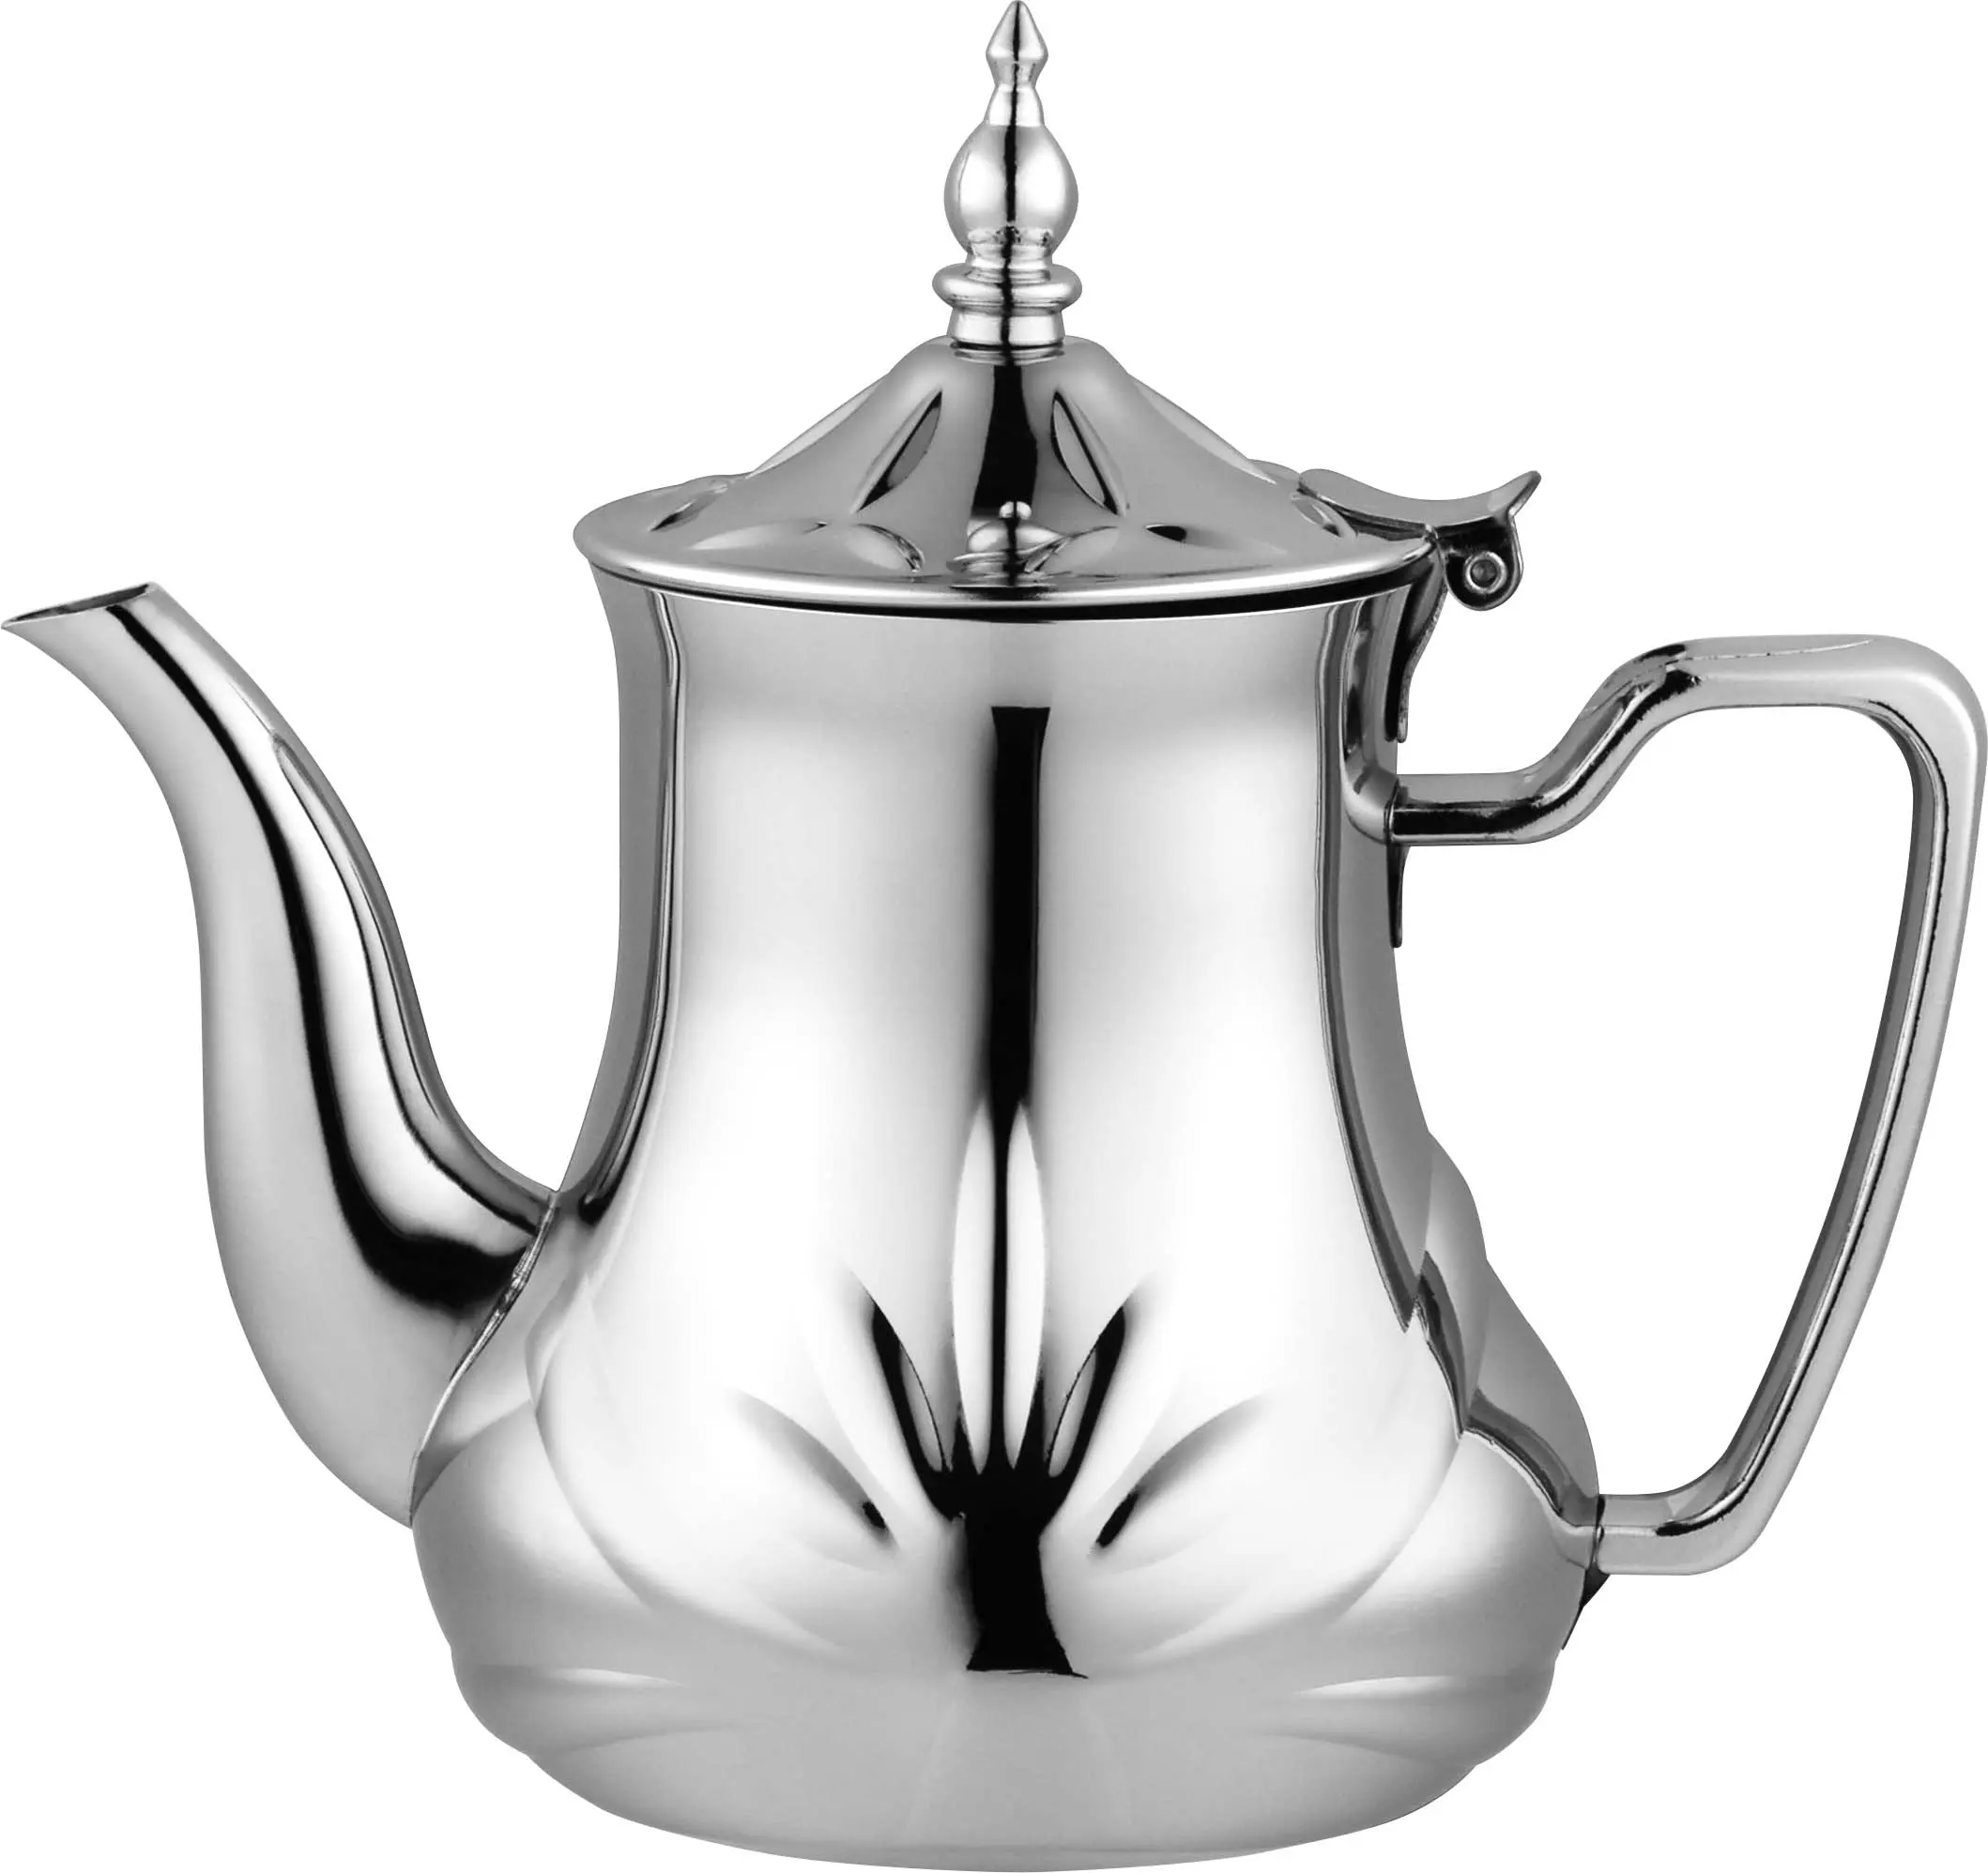 In acciaio inox 201 materiale Turco Arabo decorativo stufa teiera bollitore fatto a mano del tè caffè pentola